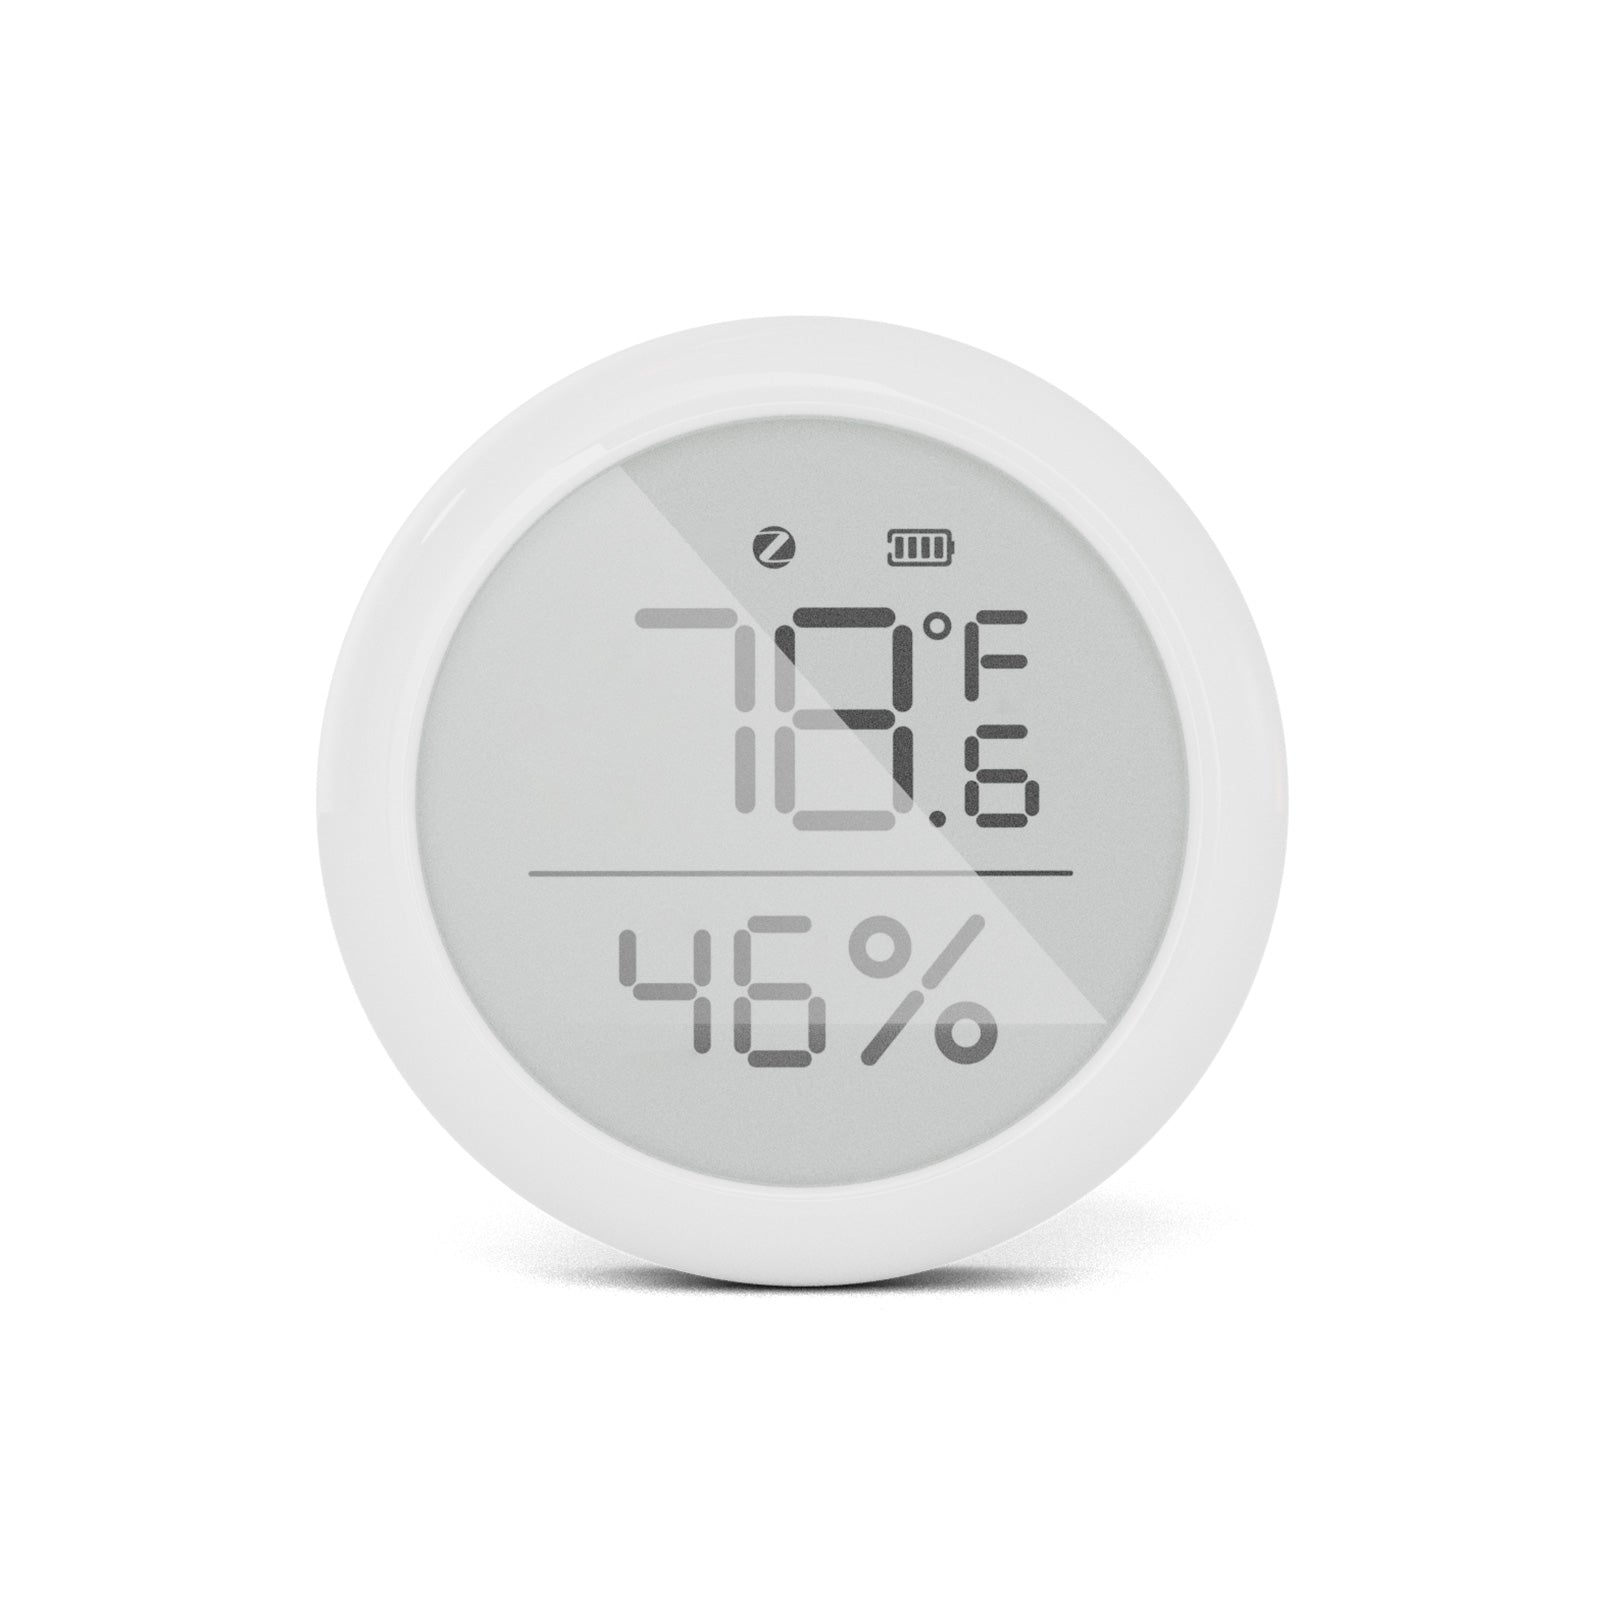 Best ZigBee temperature sensors - NotEnoughTech